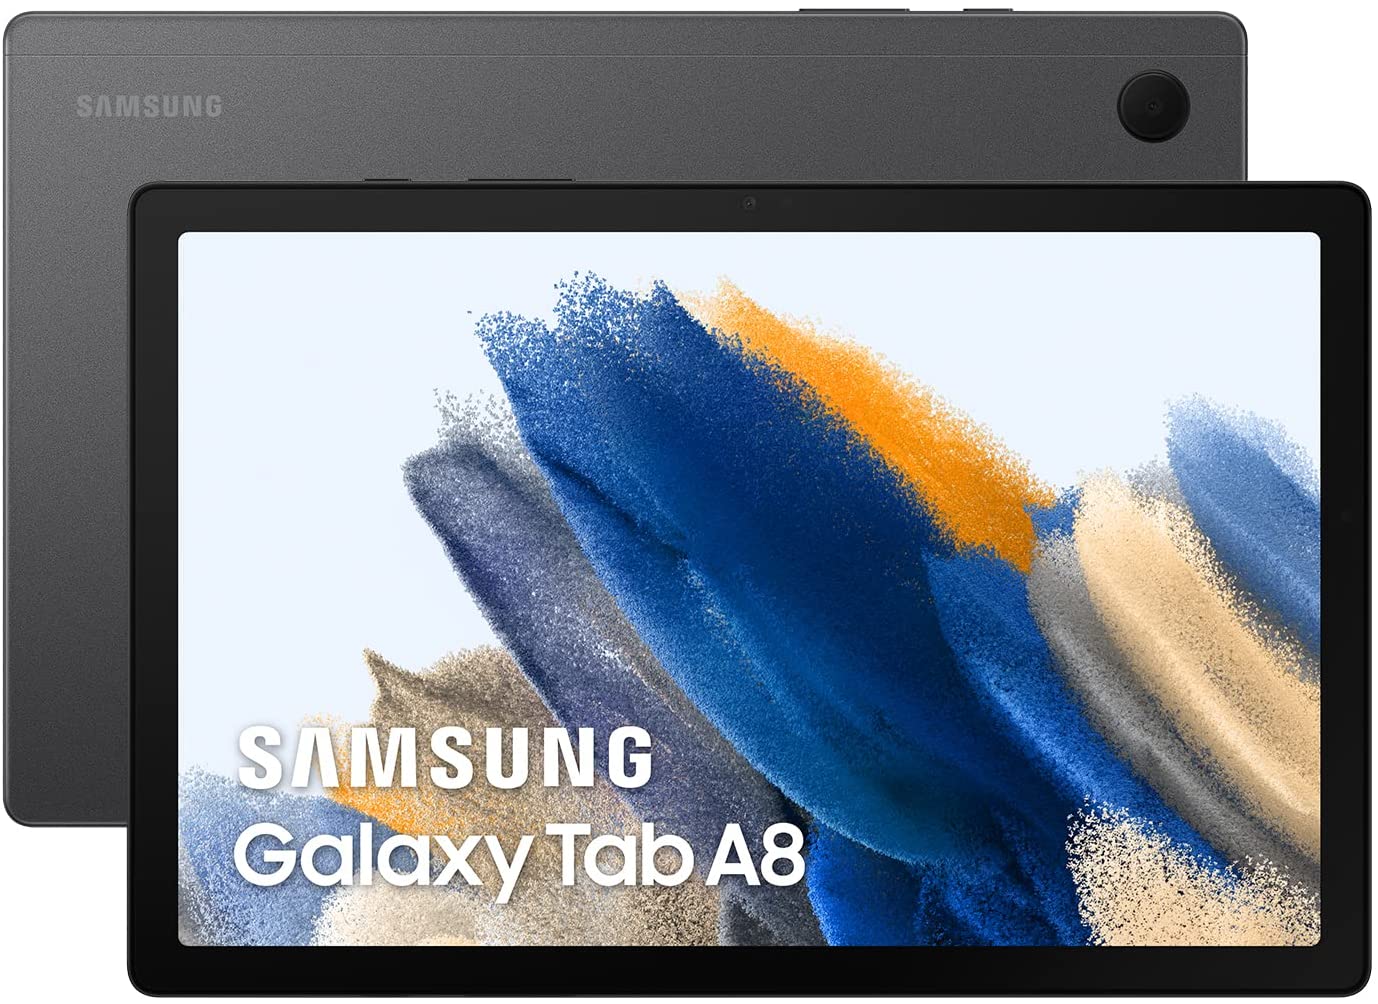 Samsung Galaxy Tab A8 vs Samsung Galaxy Tab A9